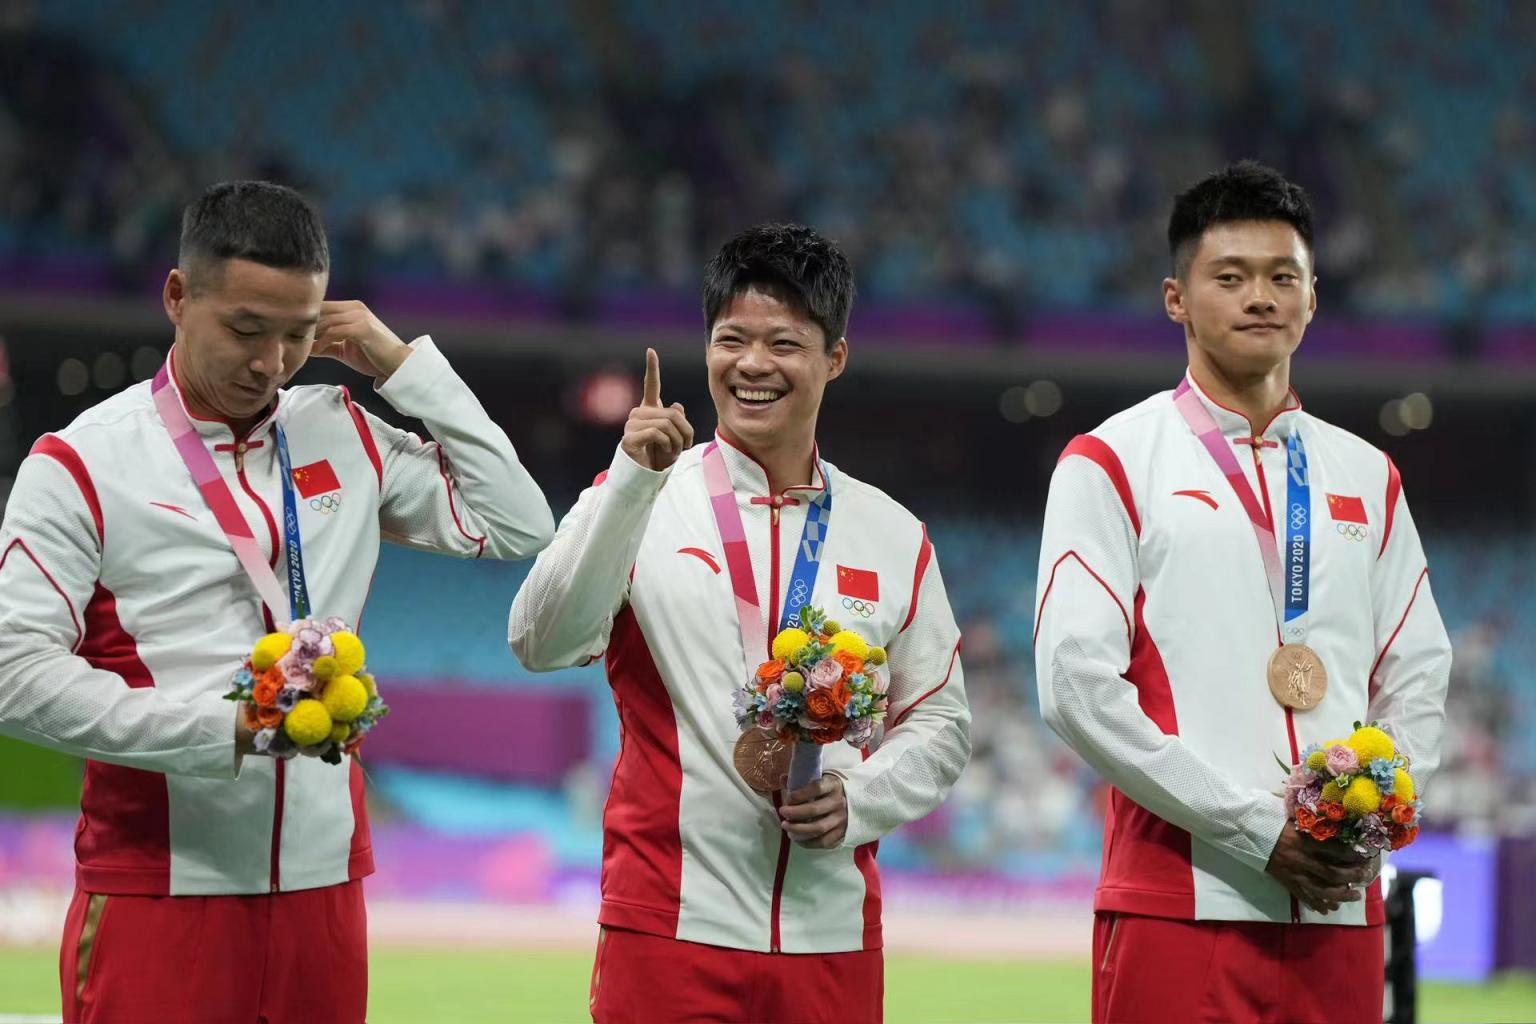 共同见证!苏炳添等七名田径运动员获得补发的奥运奖牌